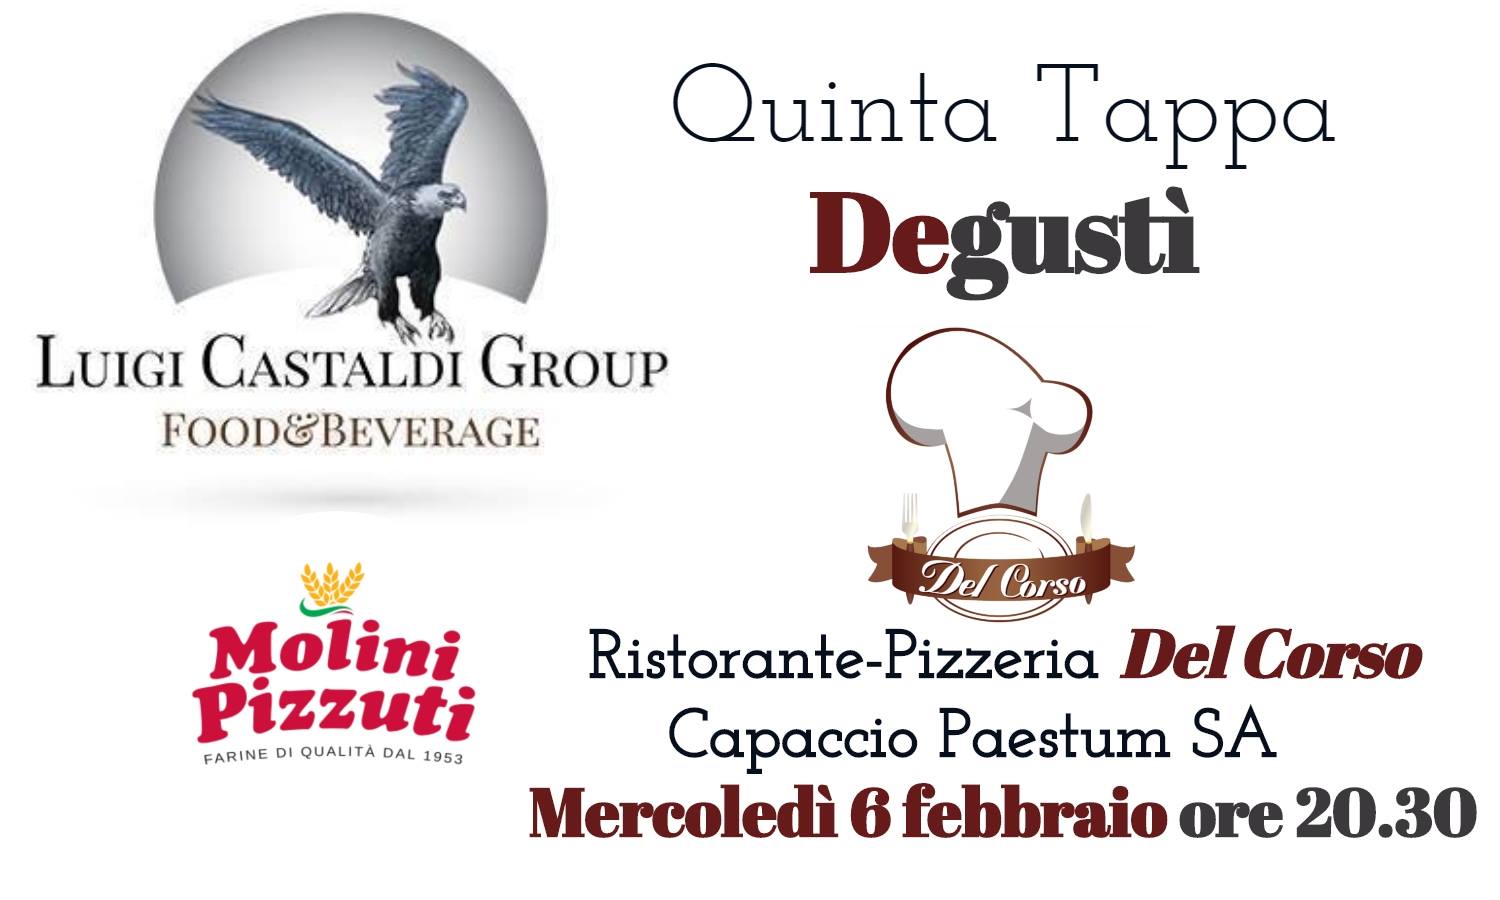 Il tour enogastronomico della Luigi Castaldi Group, Degustì - sapori in circolo, arriva in Cilento, a Paestum Capaccio mercoledì 6 febbraio
